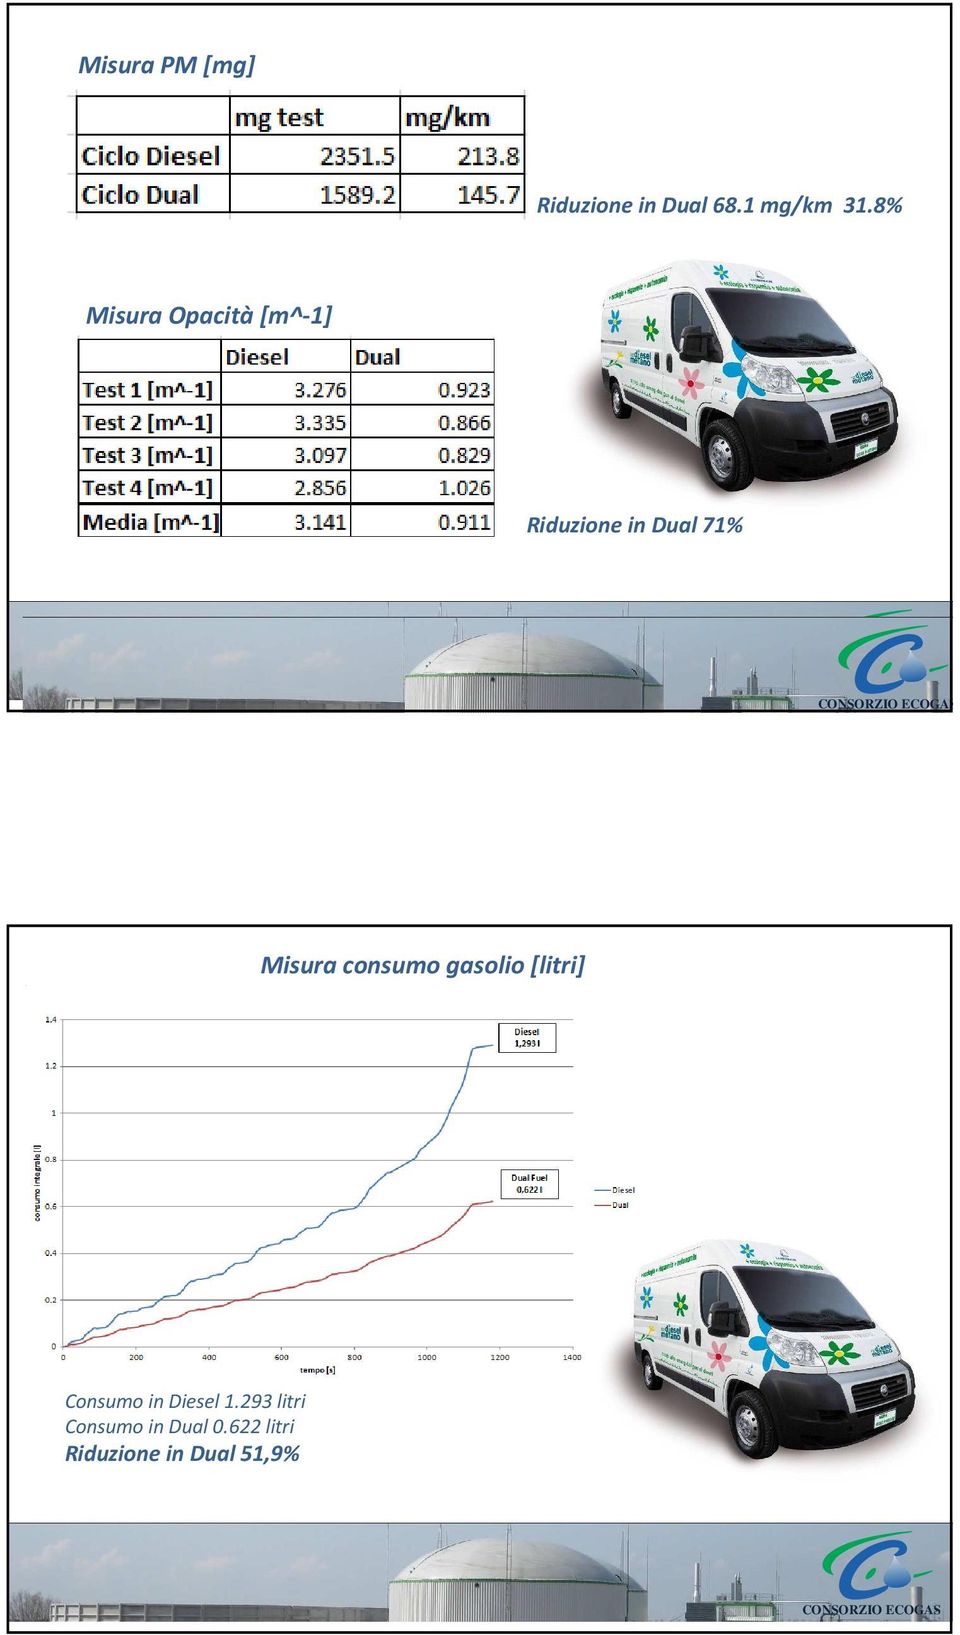 Misura consumo gasolio [litri] < Consumo in Diesel